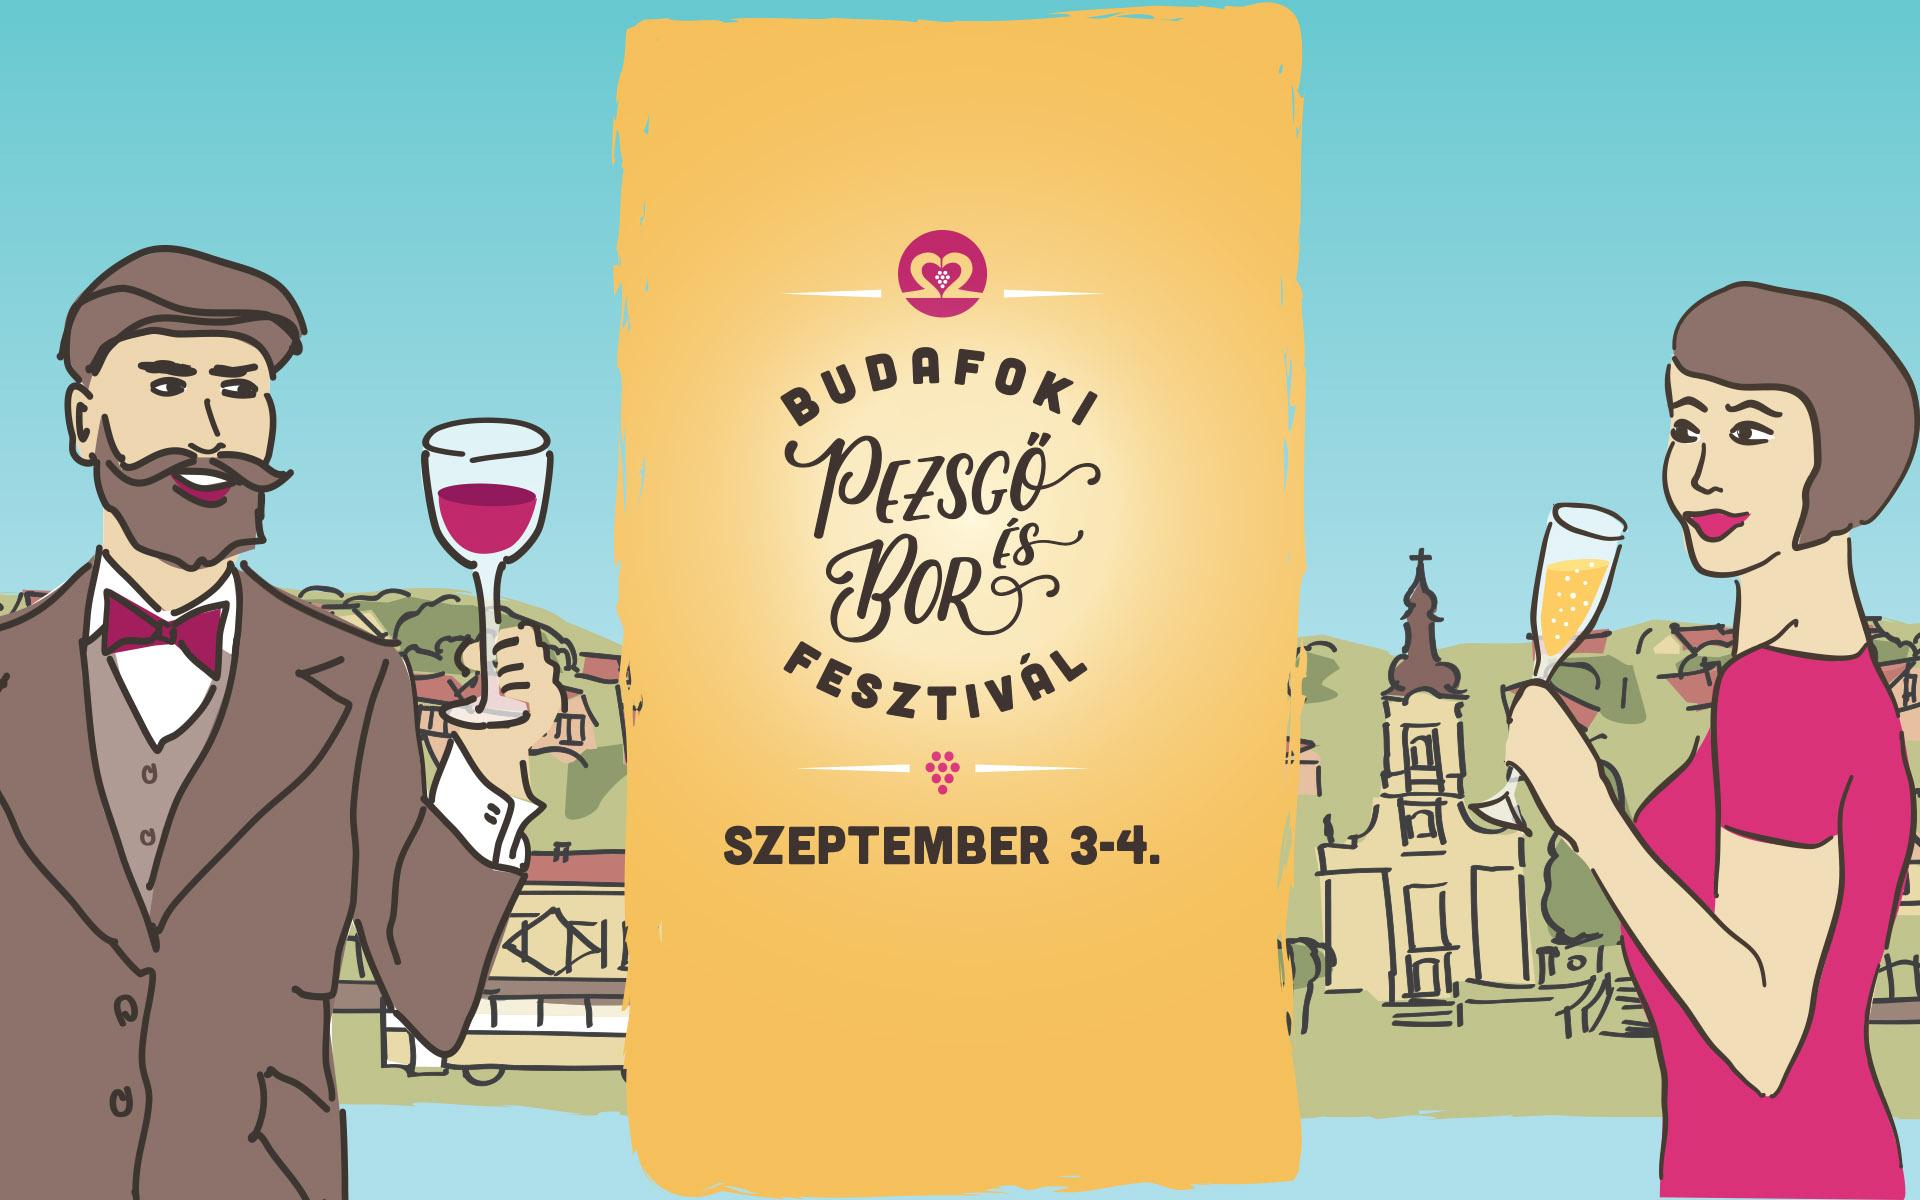 Budafok Champagne & Wine Festival, Budapest, 3 - 4 September